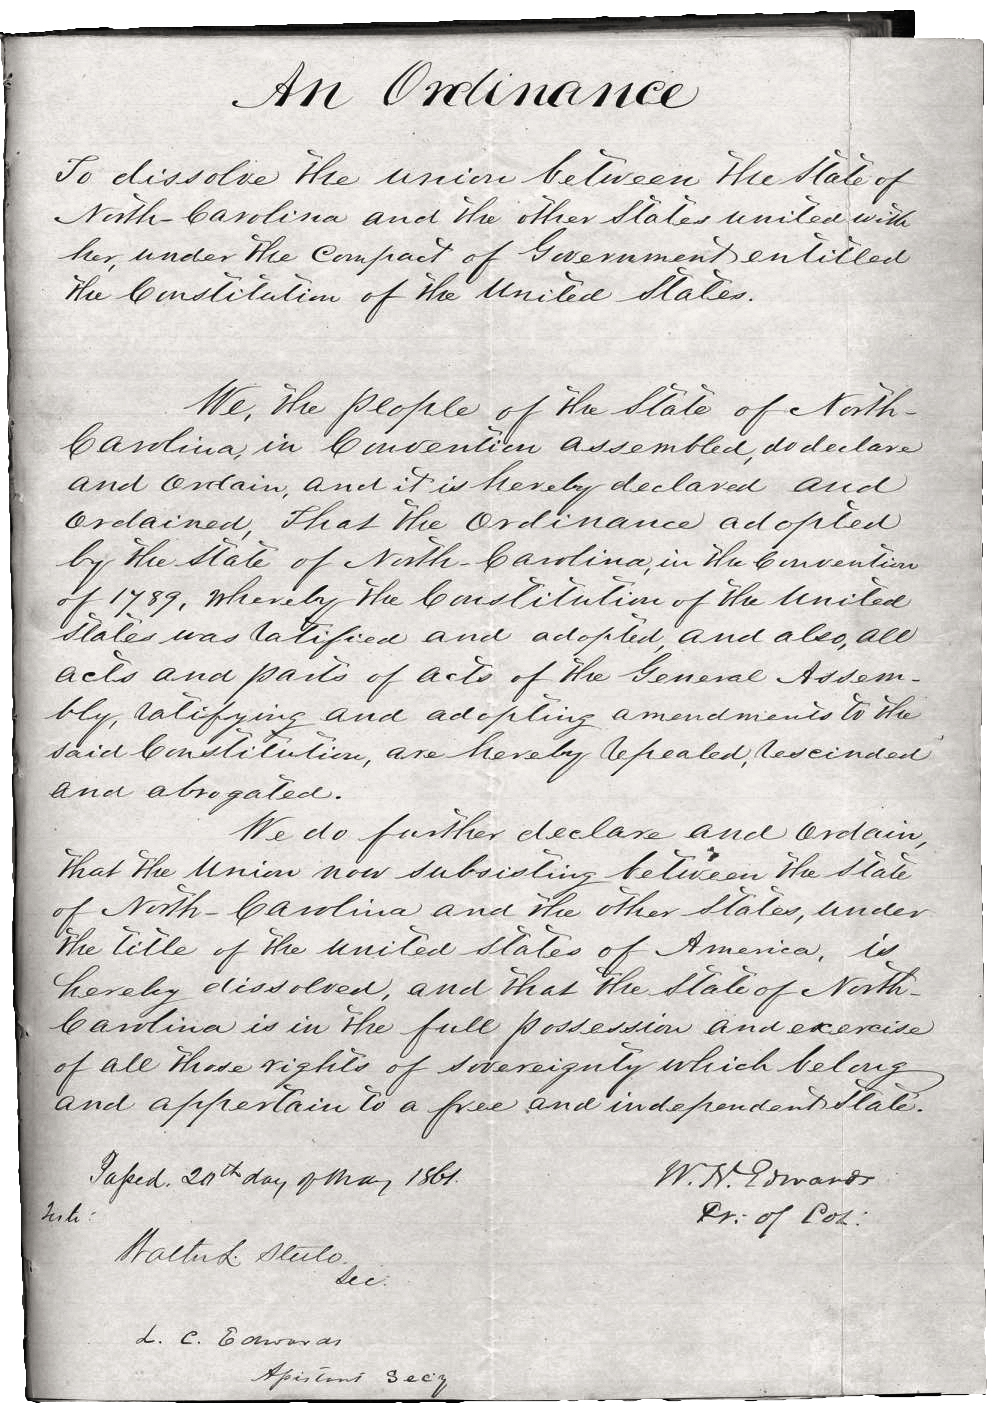 North Carolina Ordinance of Secession, May 20, 1861